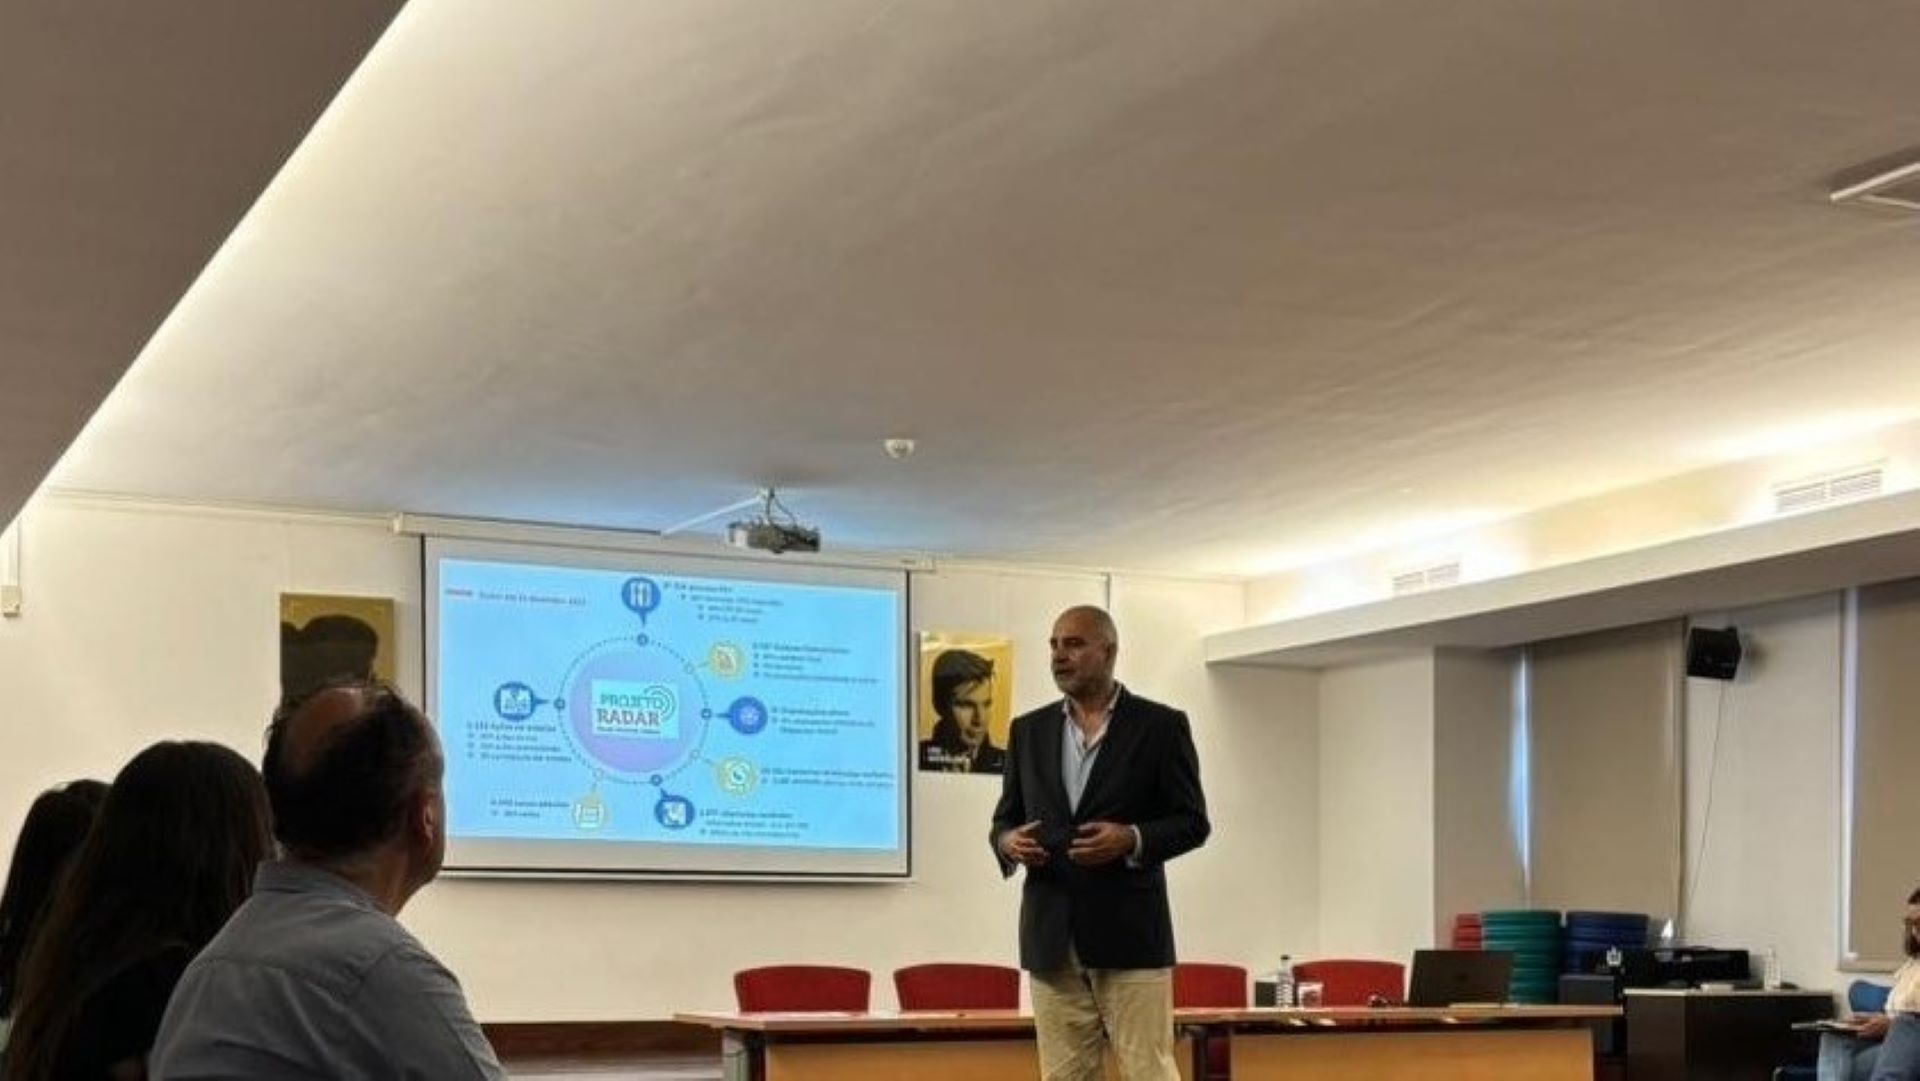 Mário Rui André explica o projeto Radar a audiência